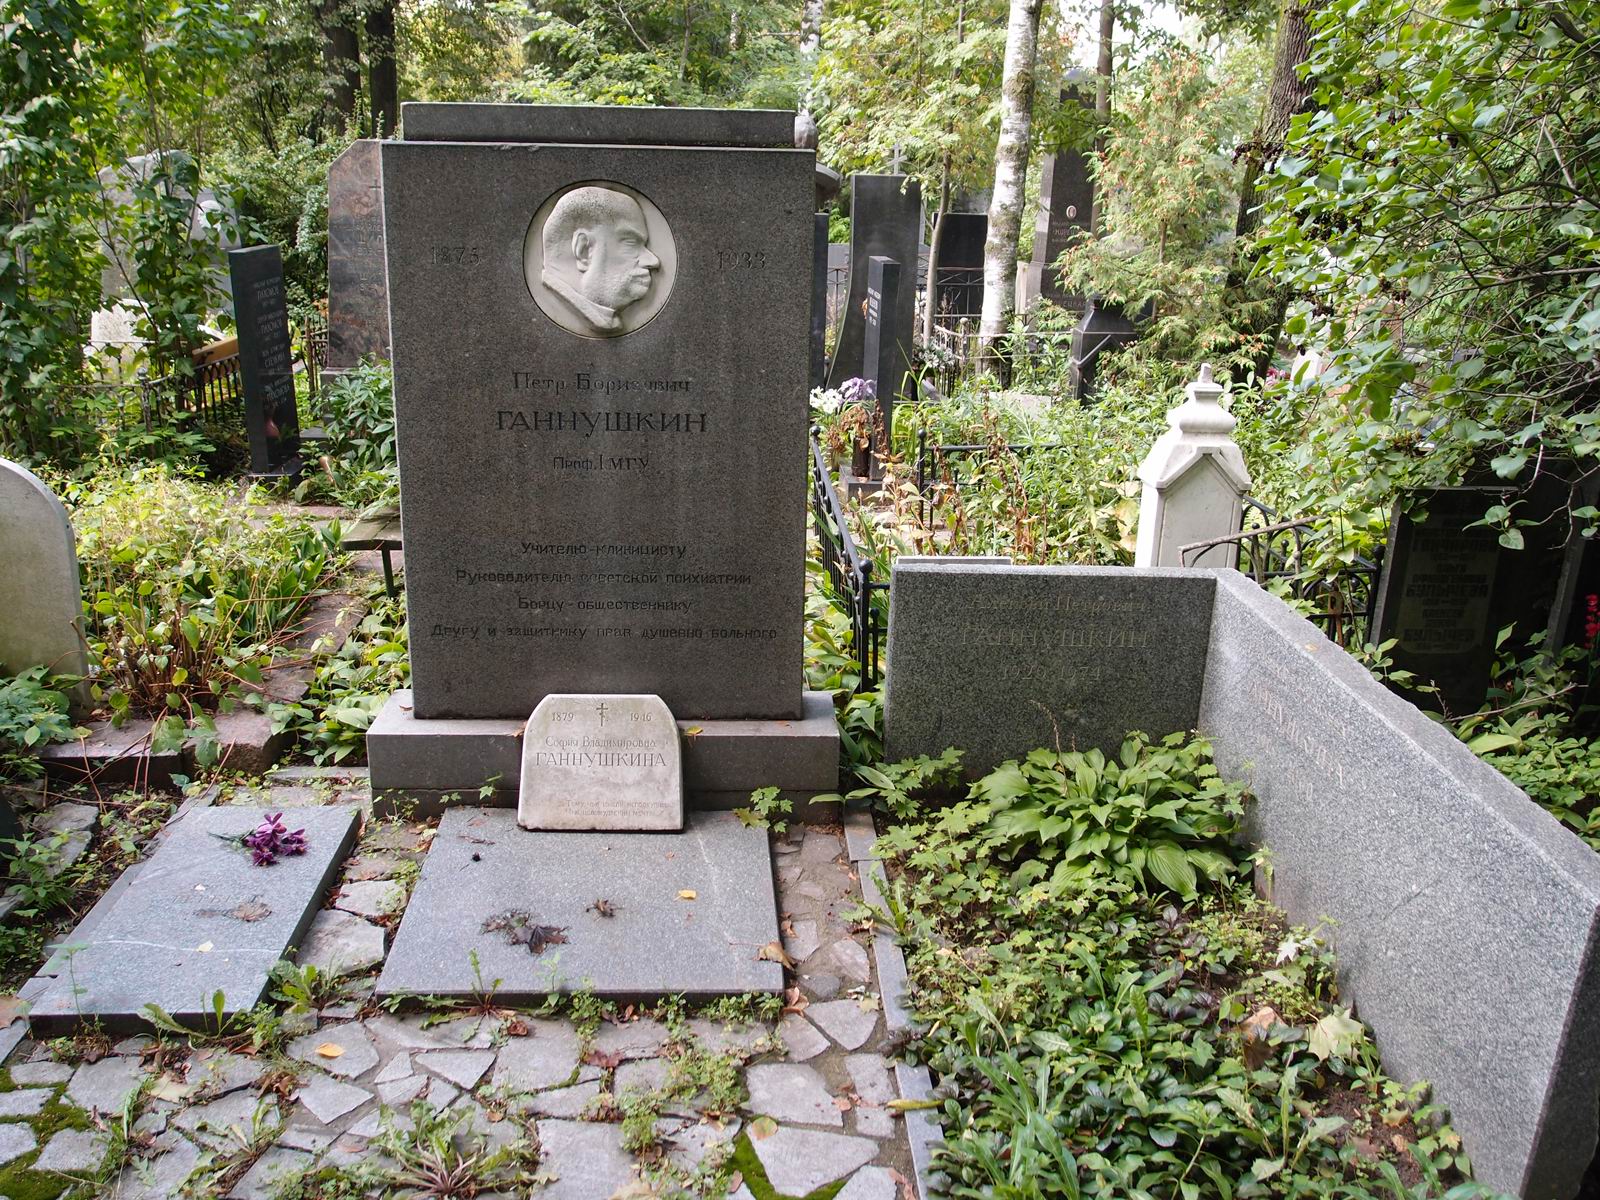 Памятник на могиле Ганнушкина П.Б. (1875-1933), ск. О.Домогацкая, на Новодевичьем кладбище (3-43-11). Нажмите левую кнопку мыши чтобы увидеть фрагмент памятника.